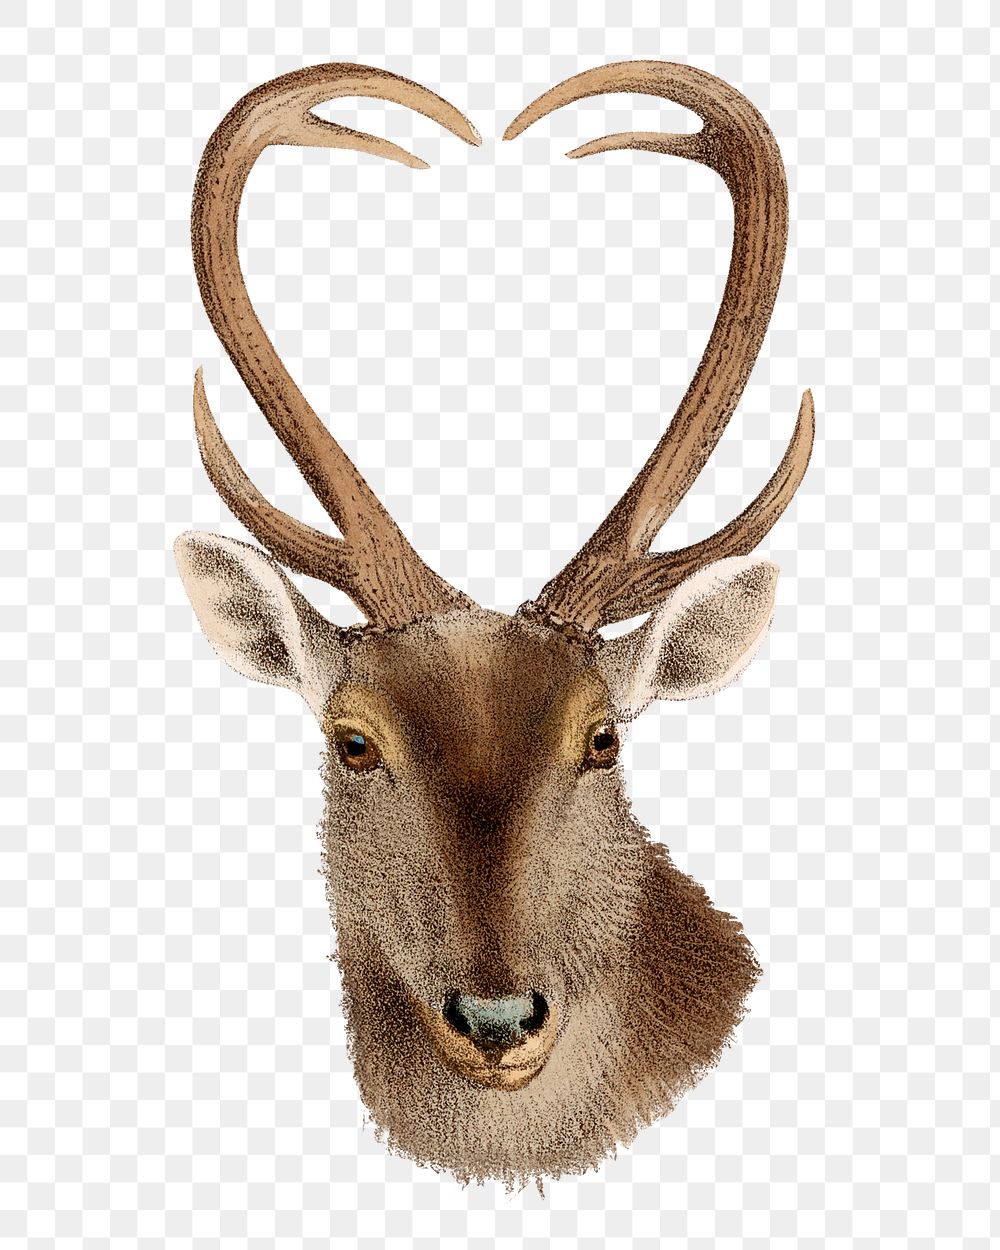 Vintage deer png sticker, animal illustration, transparent background  